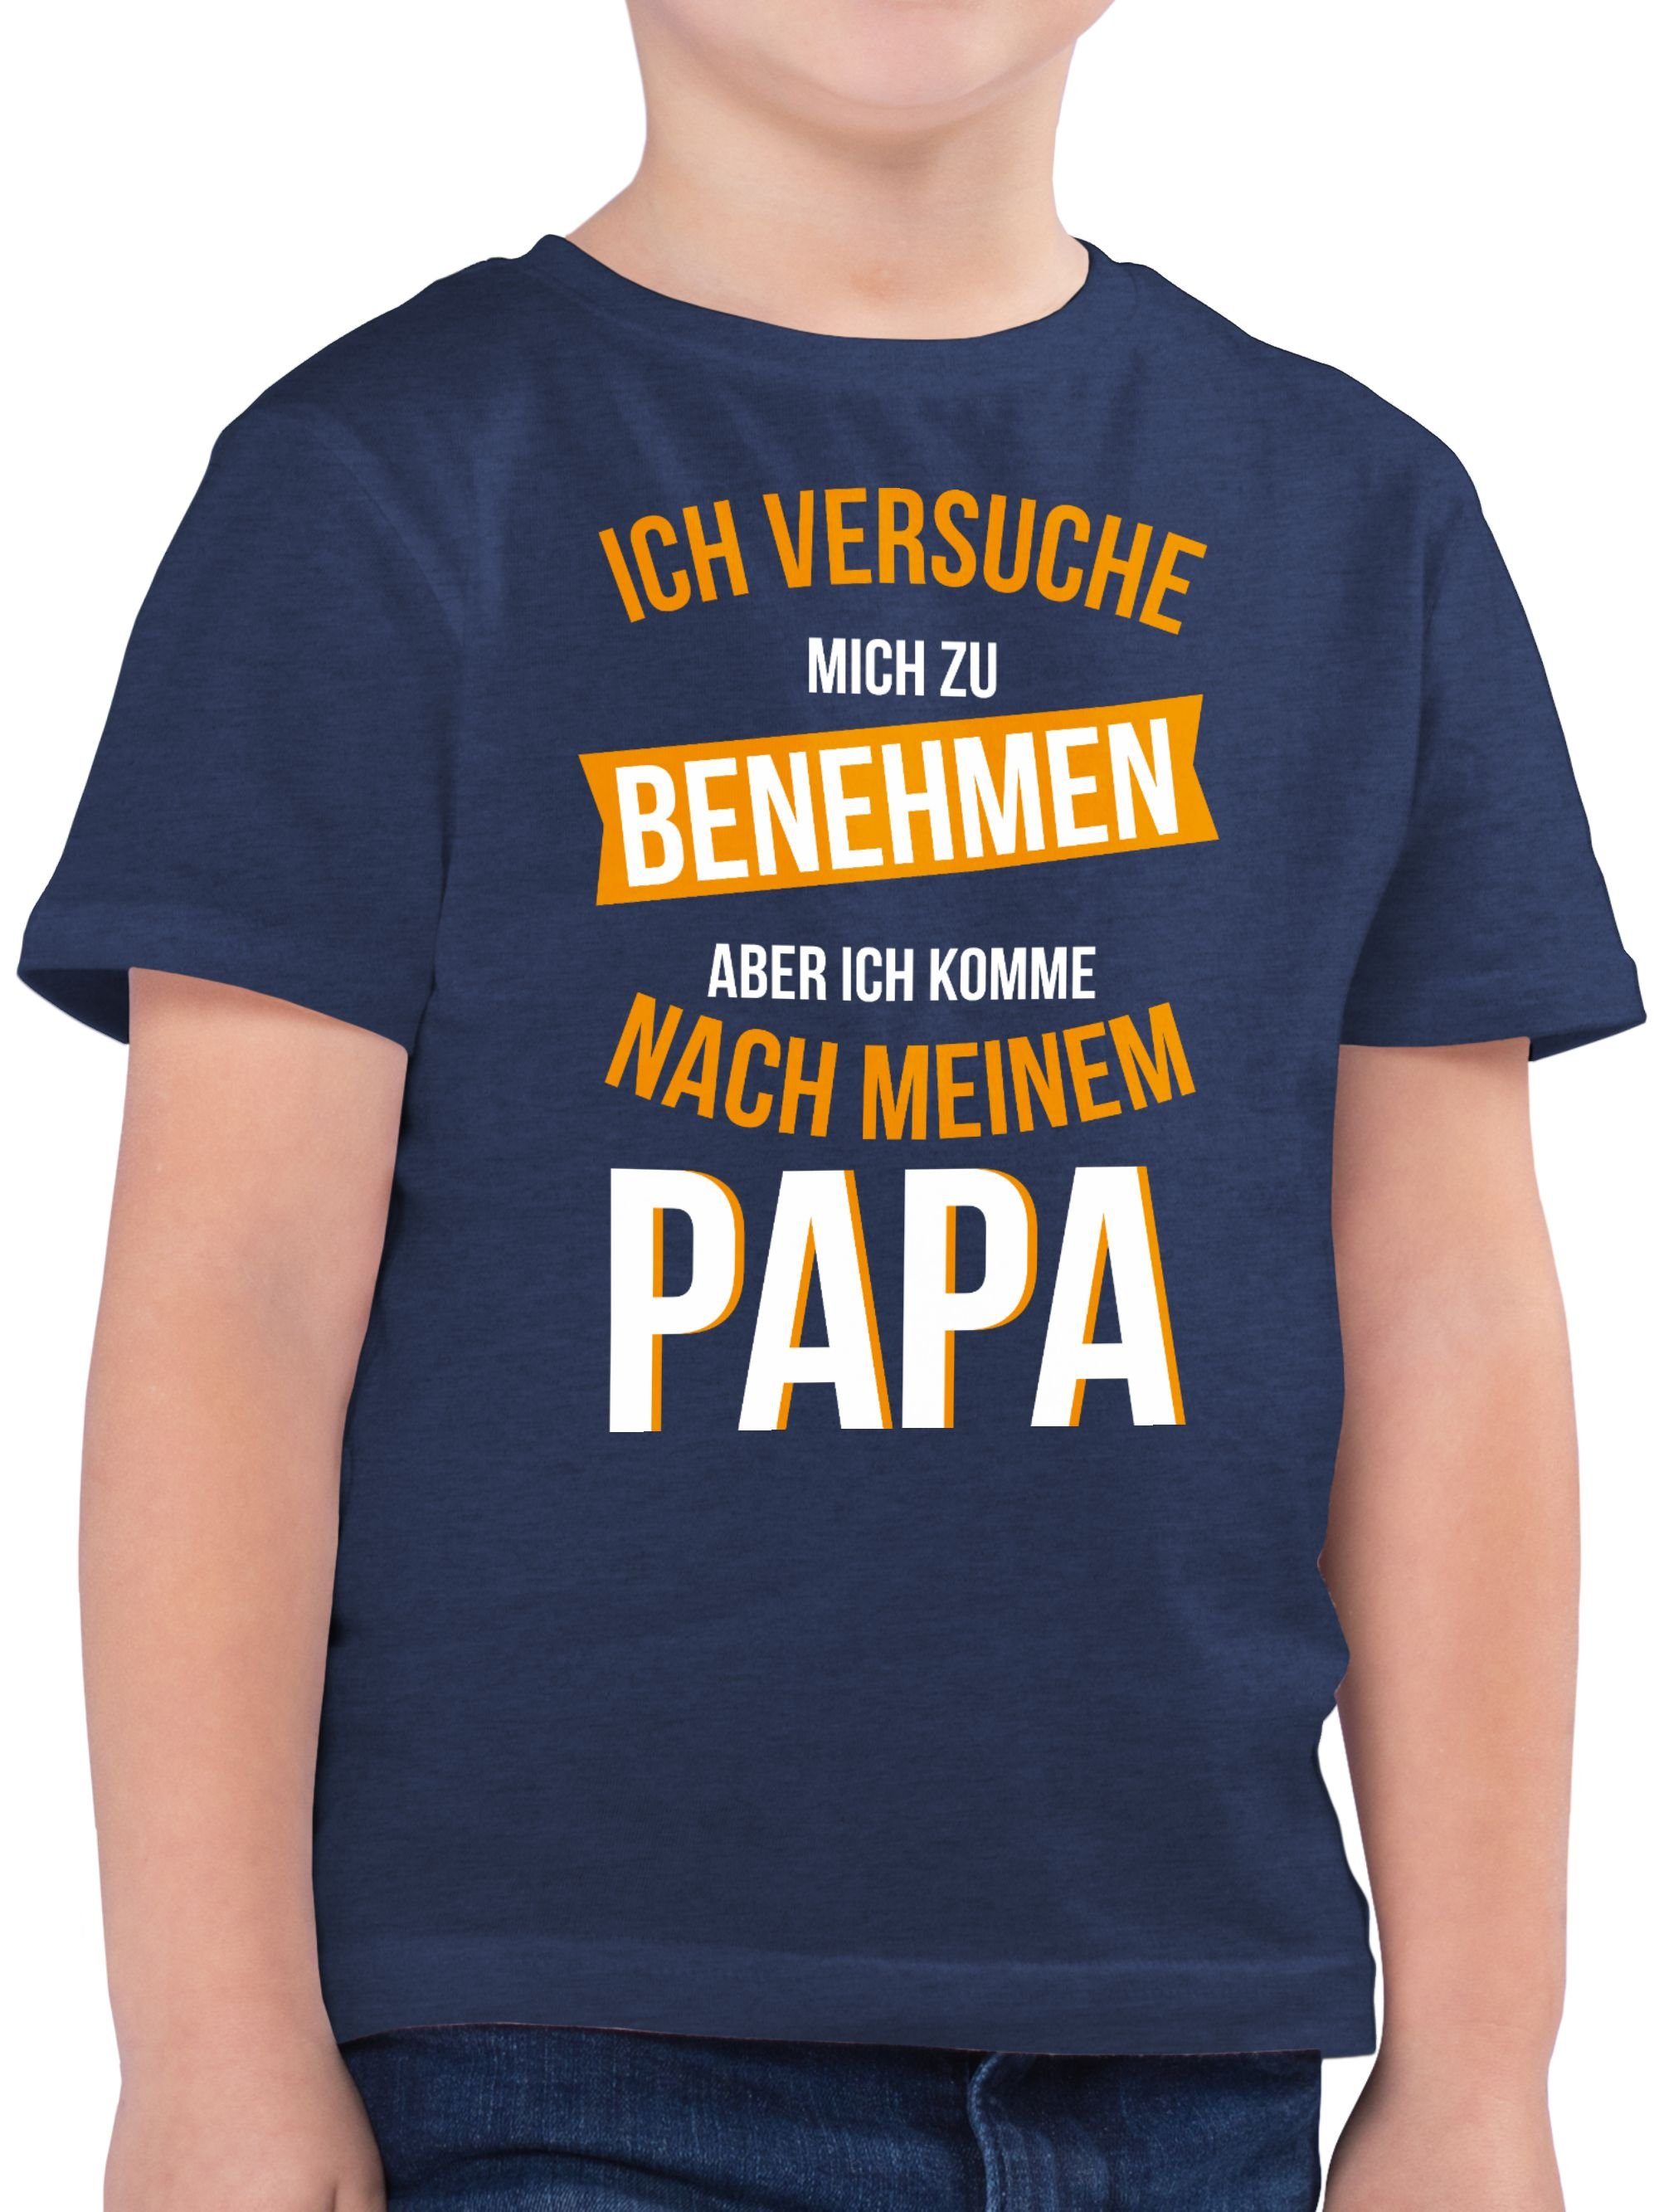 benehmen Papa Shirtracer Versuche Sprüche Statement T-Shirt komme mich nach 3 Kinder zu Dunkelblau Meliert